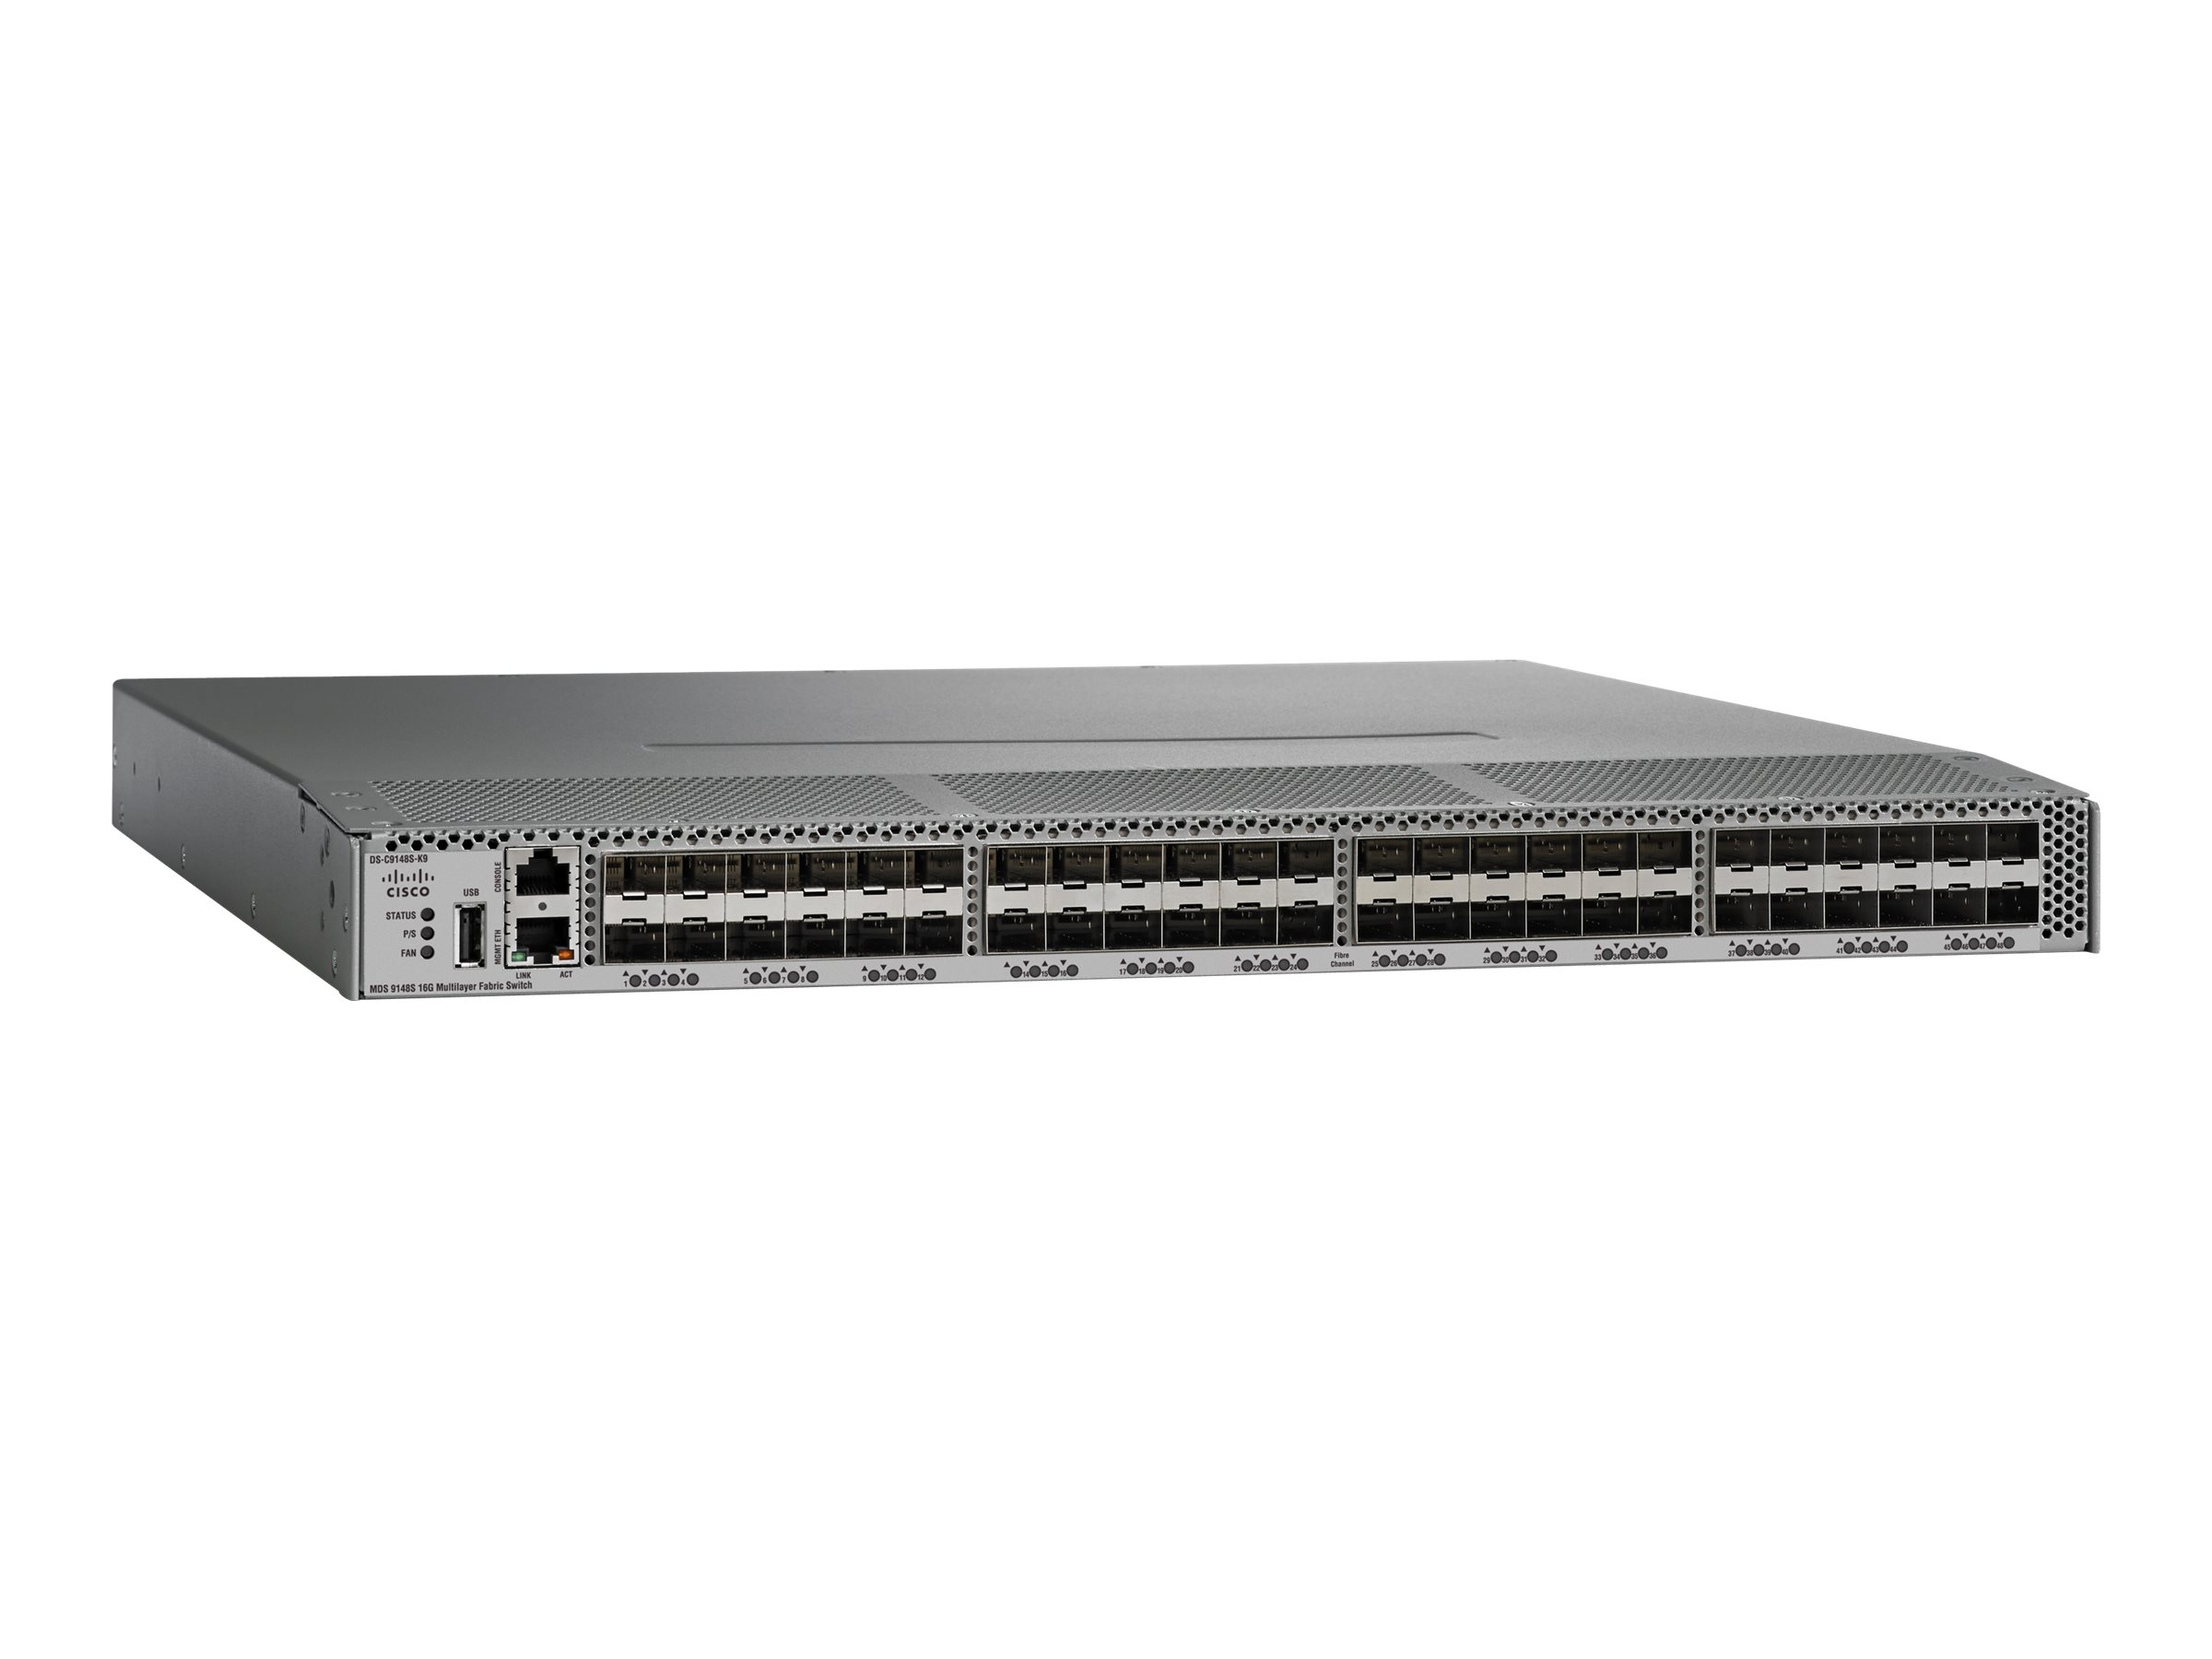 Cisco MDS 9148S - Switch - managed - 48 x 16Gb Fibre Channel - Luftstrom von hinten nach vorne - an Rack montierbar